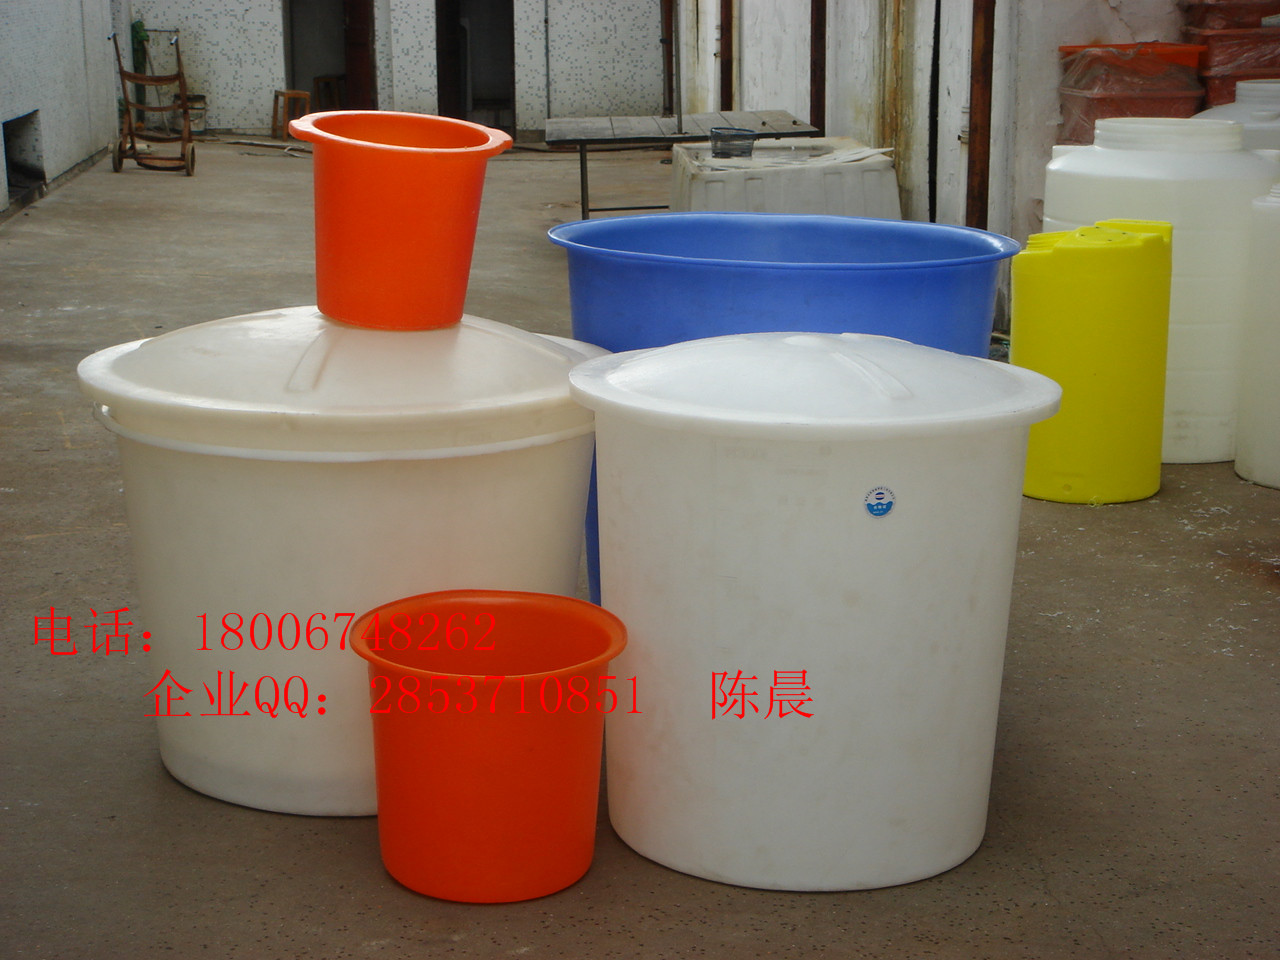 宁波市友特25L塑料圆桶 pe塑料桶厂家友特25L塑料圆桶 pe塑料桶 耐酸碱抗老化厂家直销